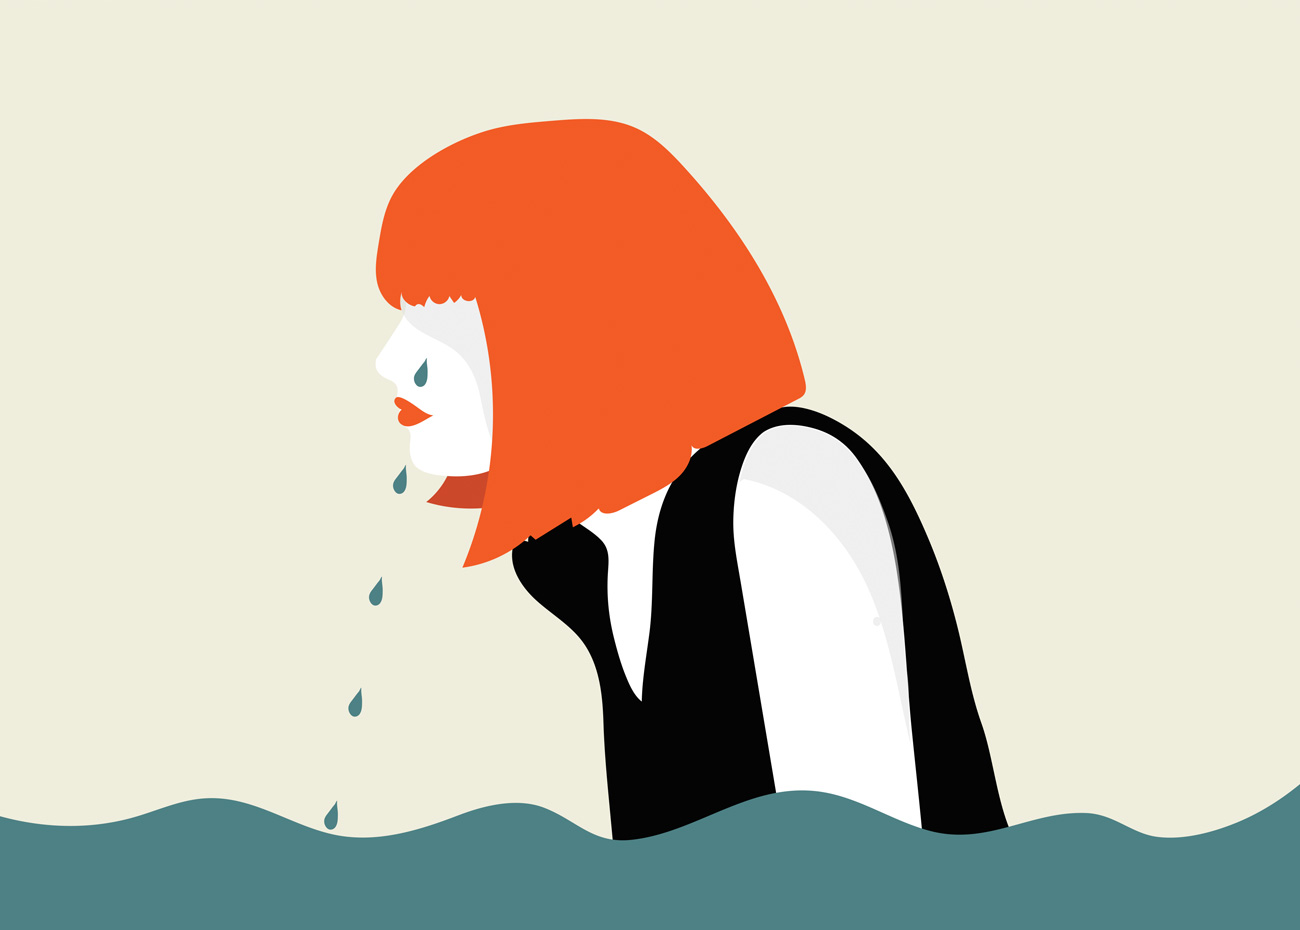 Sea girl - Conceptual illustration ©Annalisa Grassano